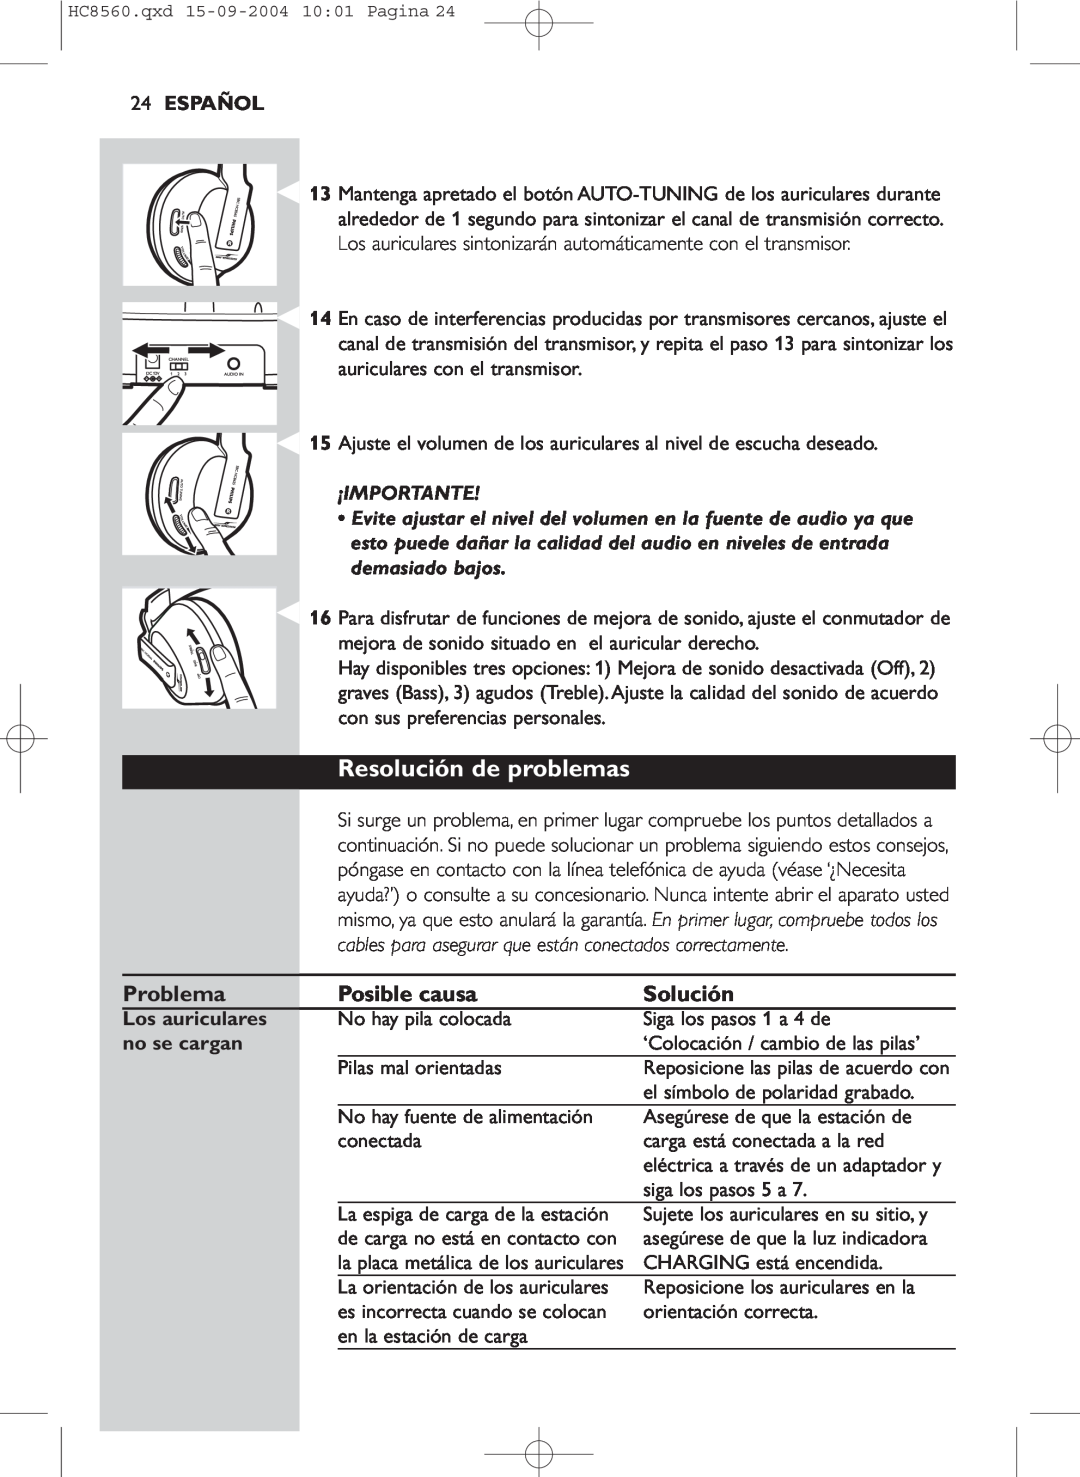 Philips HC 8560 manual Resolución de problemas, Español, ¡Importante, Los auriculares, no se cargan 